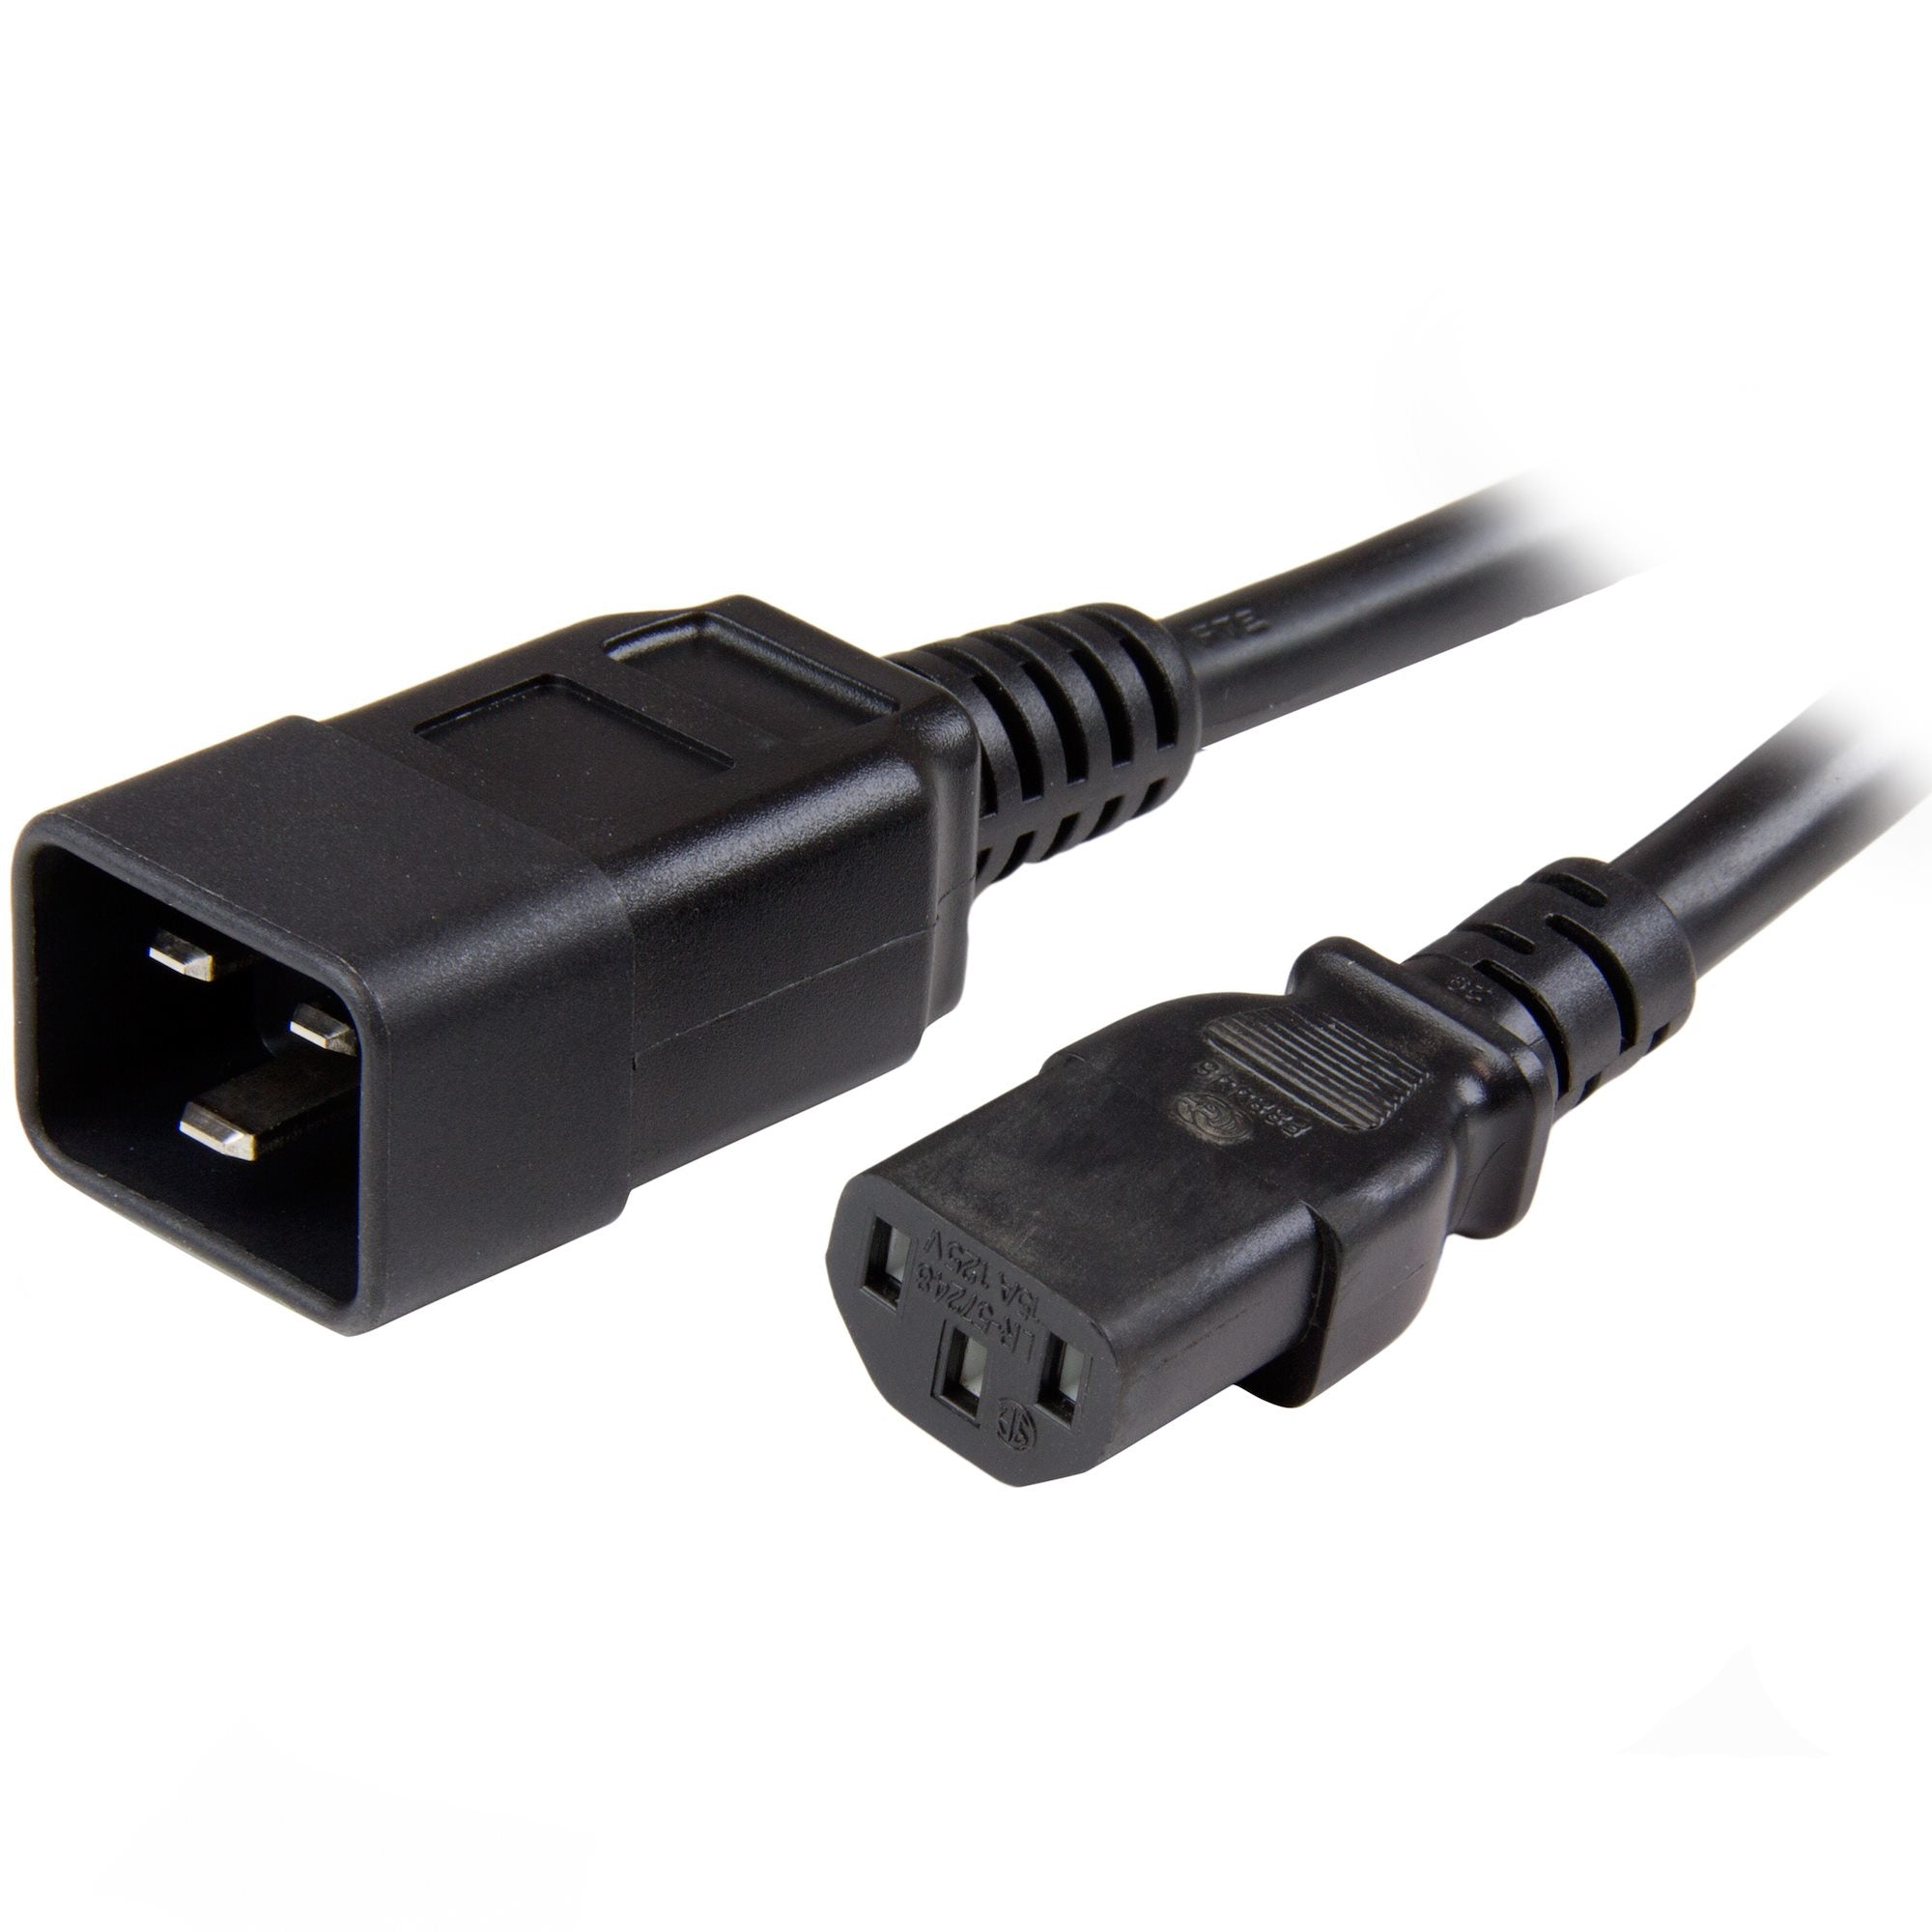 Cable De Corriente De 1.8M De Extension - C13 A C20 - 14Awg - 15A 125V - De Servicio Pesado - Cable De Alimentacion - Startech.Com Mod. Pxtc13C20146